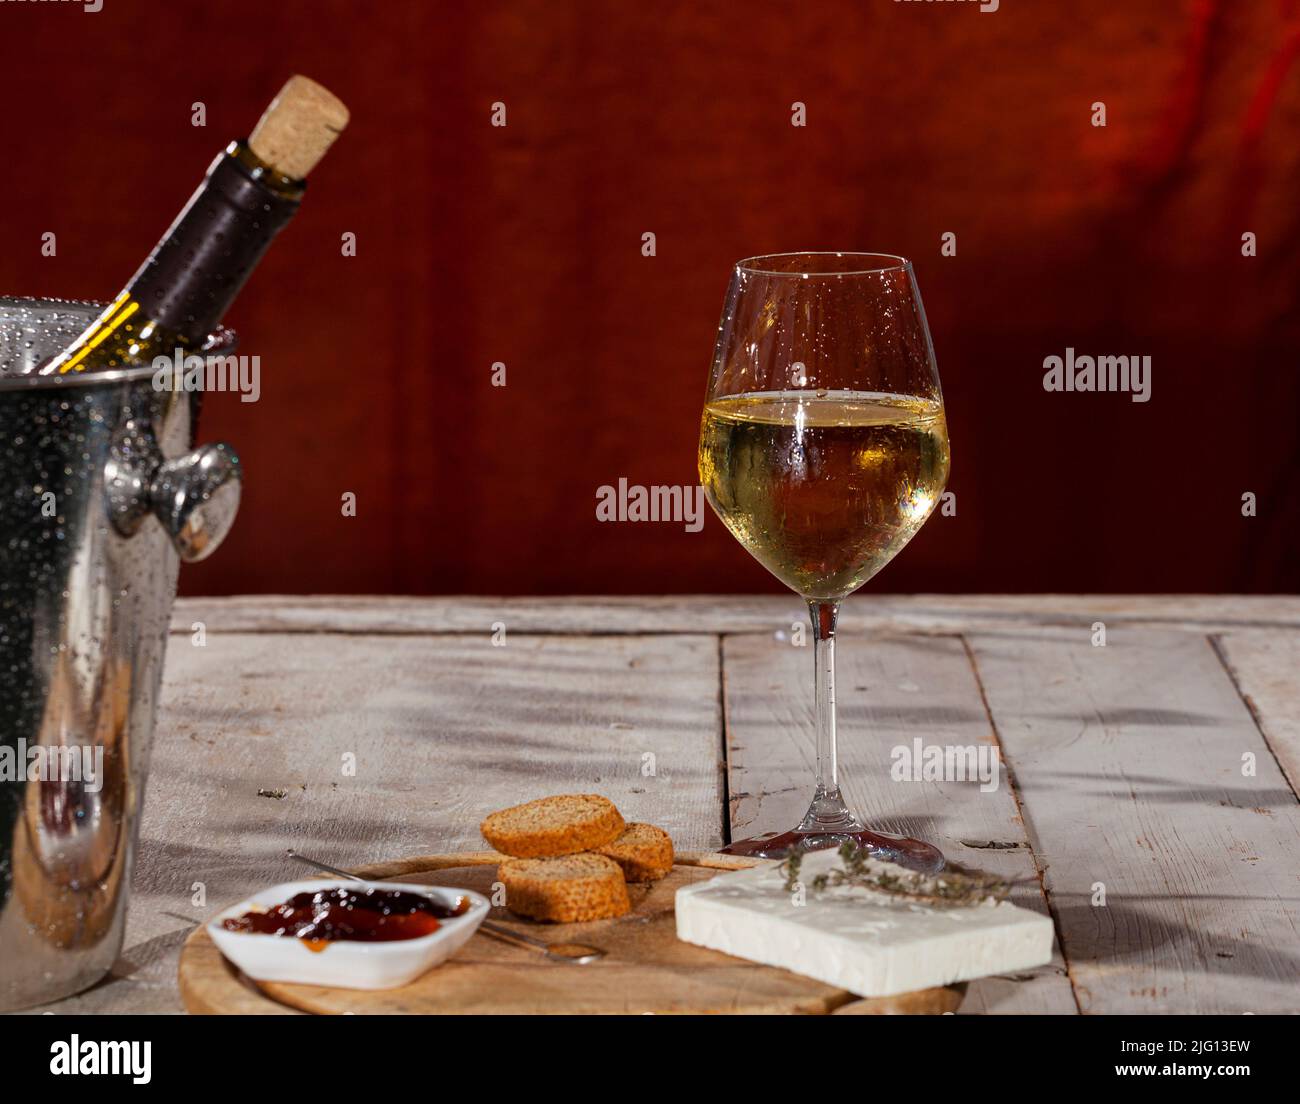 Delicioso aperitivo con tabla de queso Feta y mermelada servida con vino blanco fresco Foto de stock